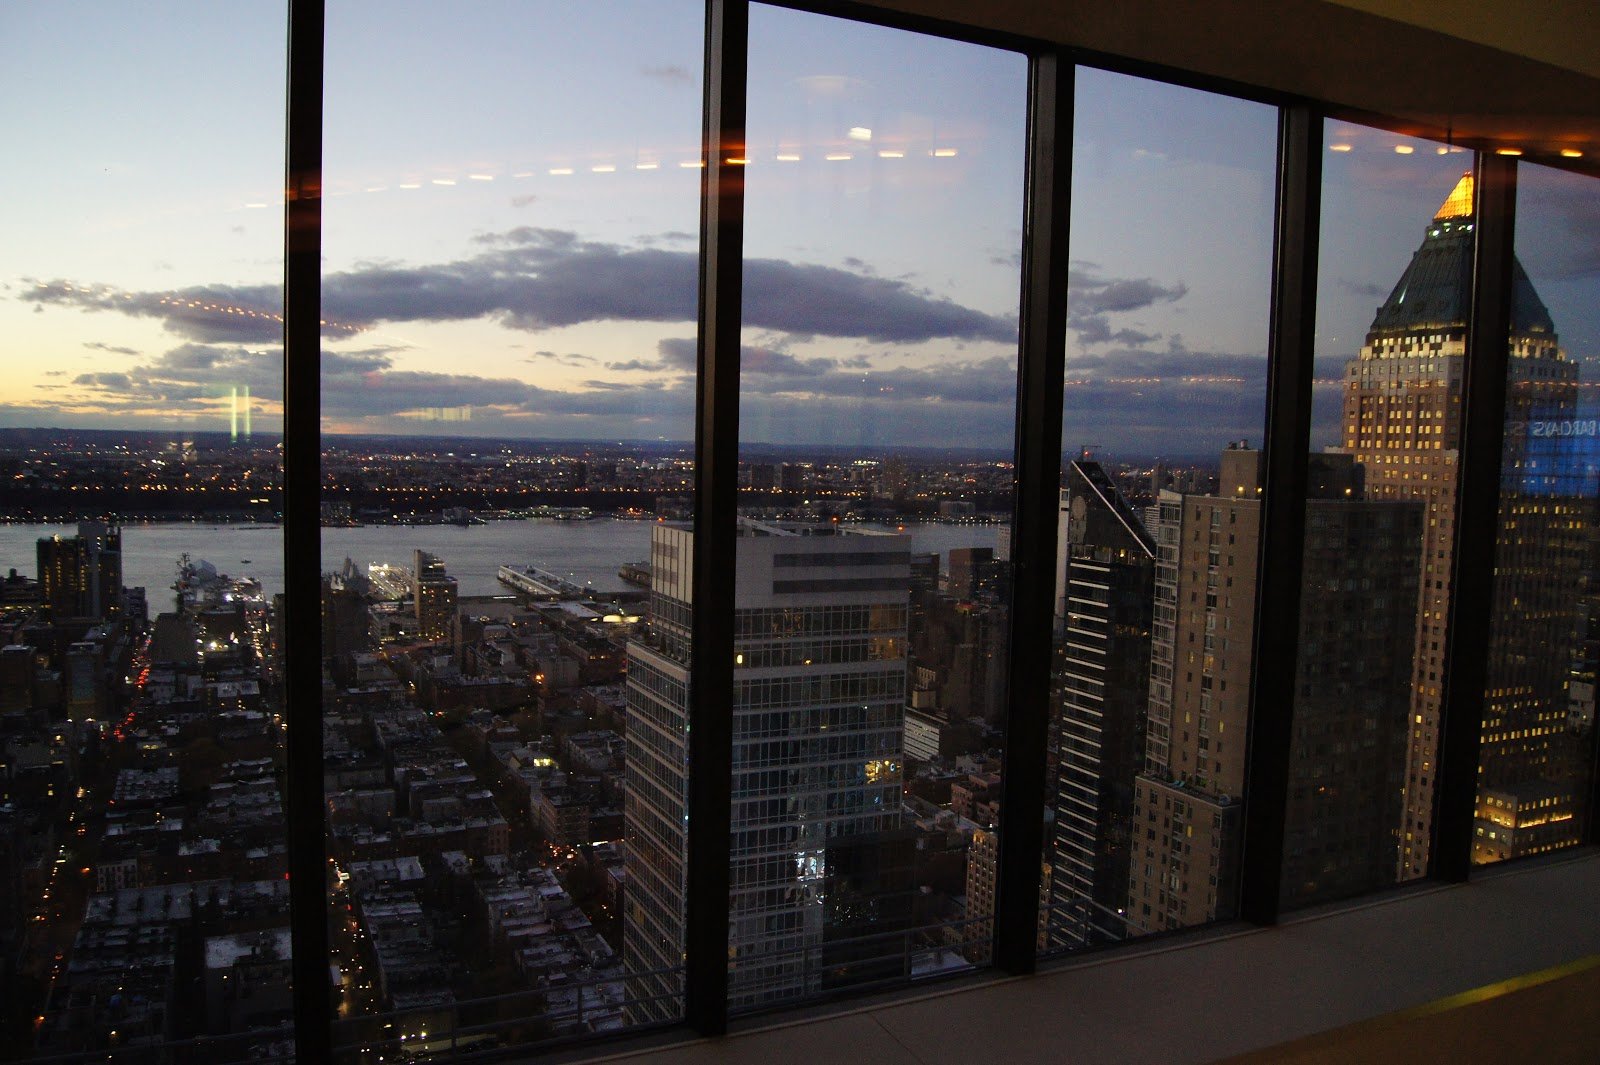 Iz okna. Нью-Йорк Манхеттен вид с окна. Вид из окна небоскреба в Нью-Йорке. Нью-Йорк ночной Манхэттен с окна. Панорамный вид из окна на город.